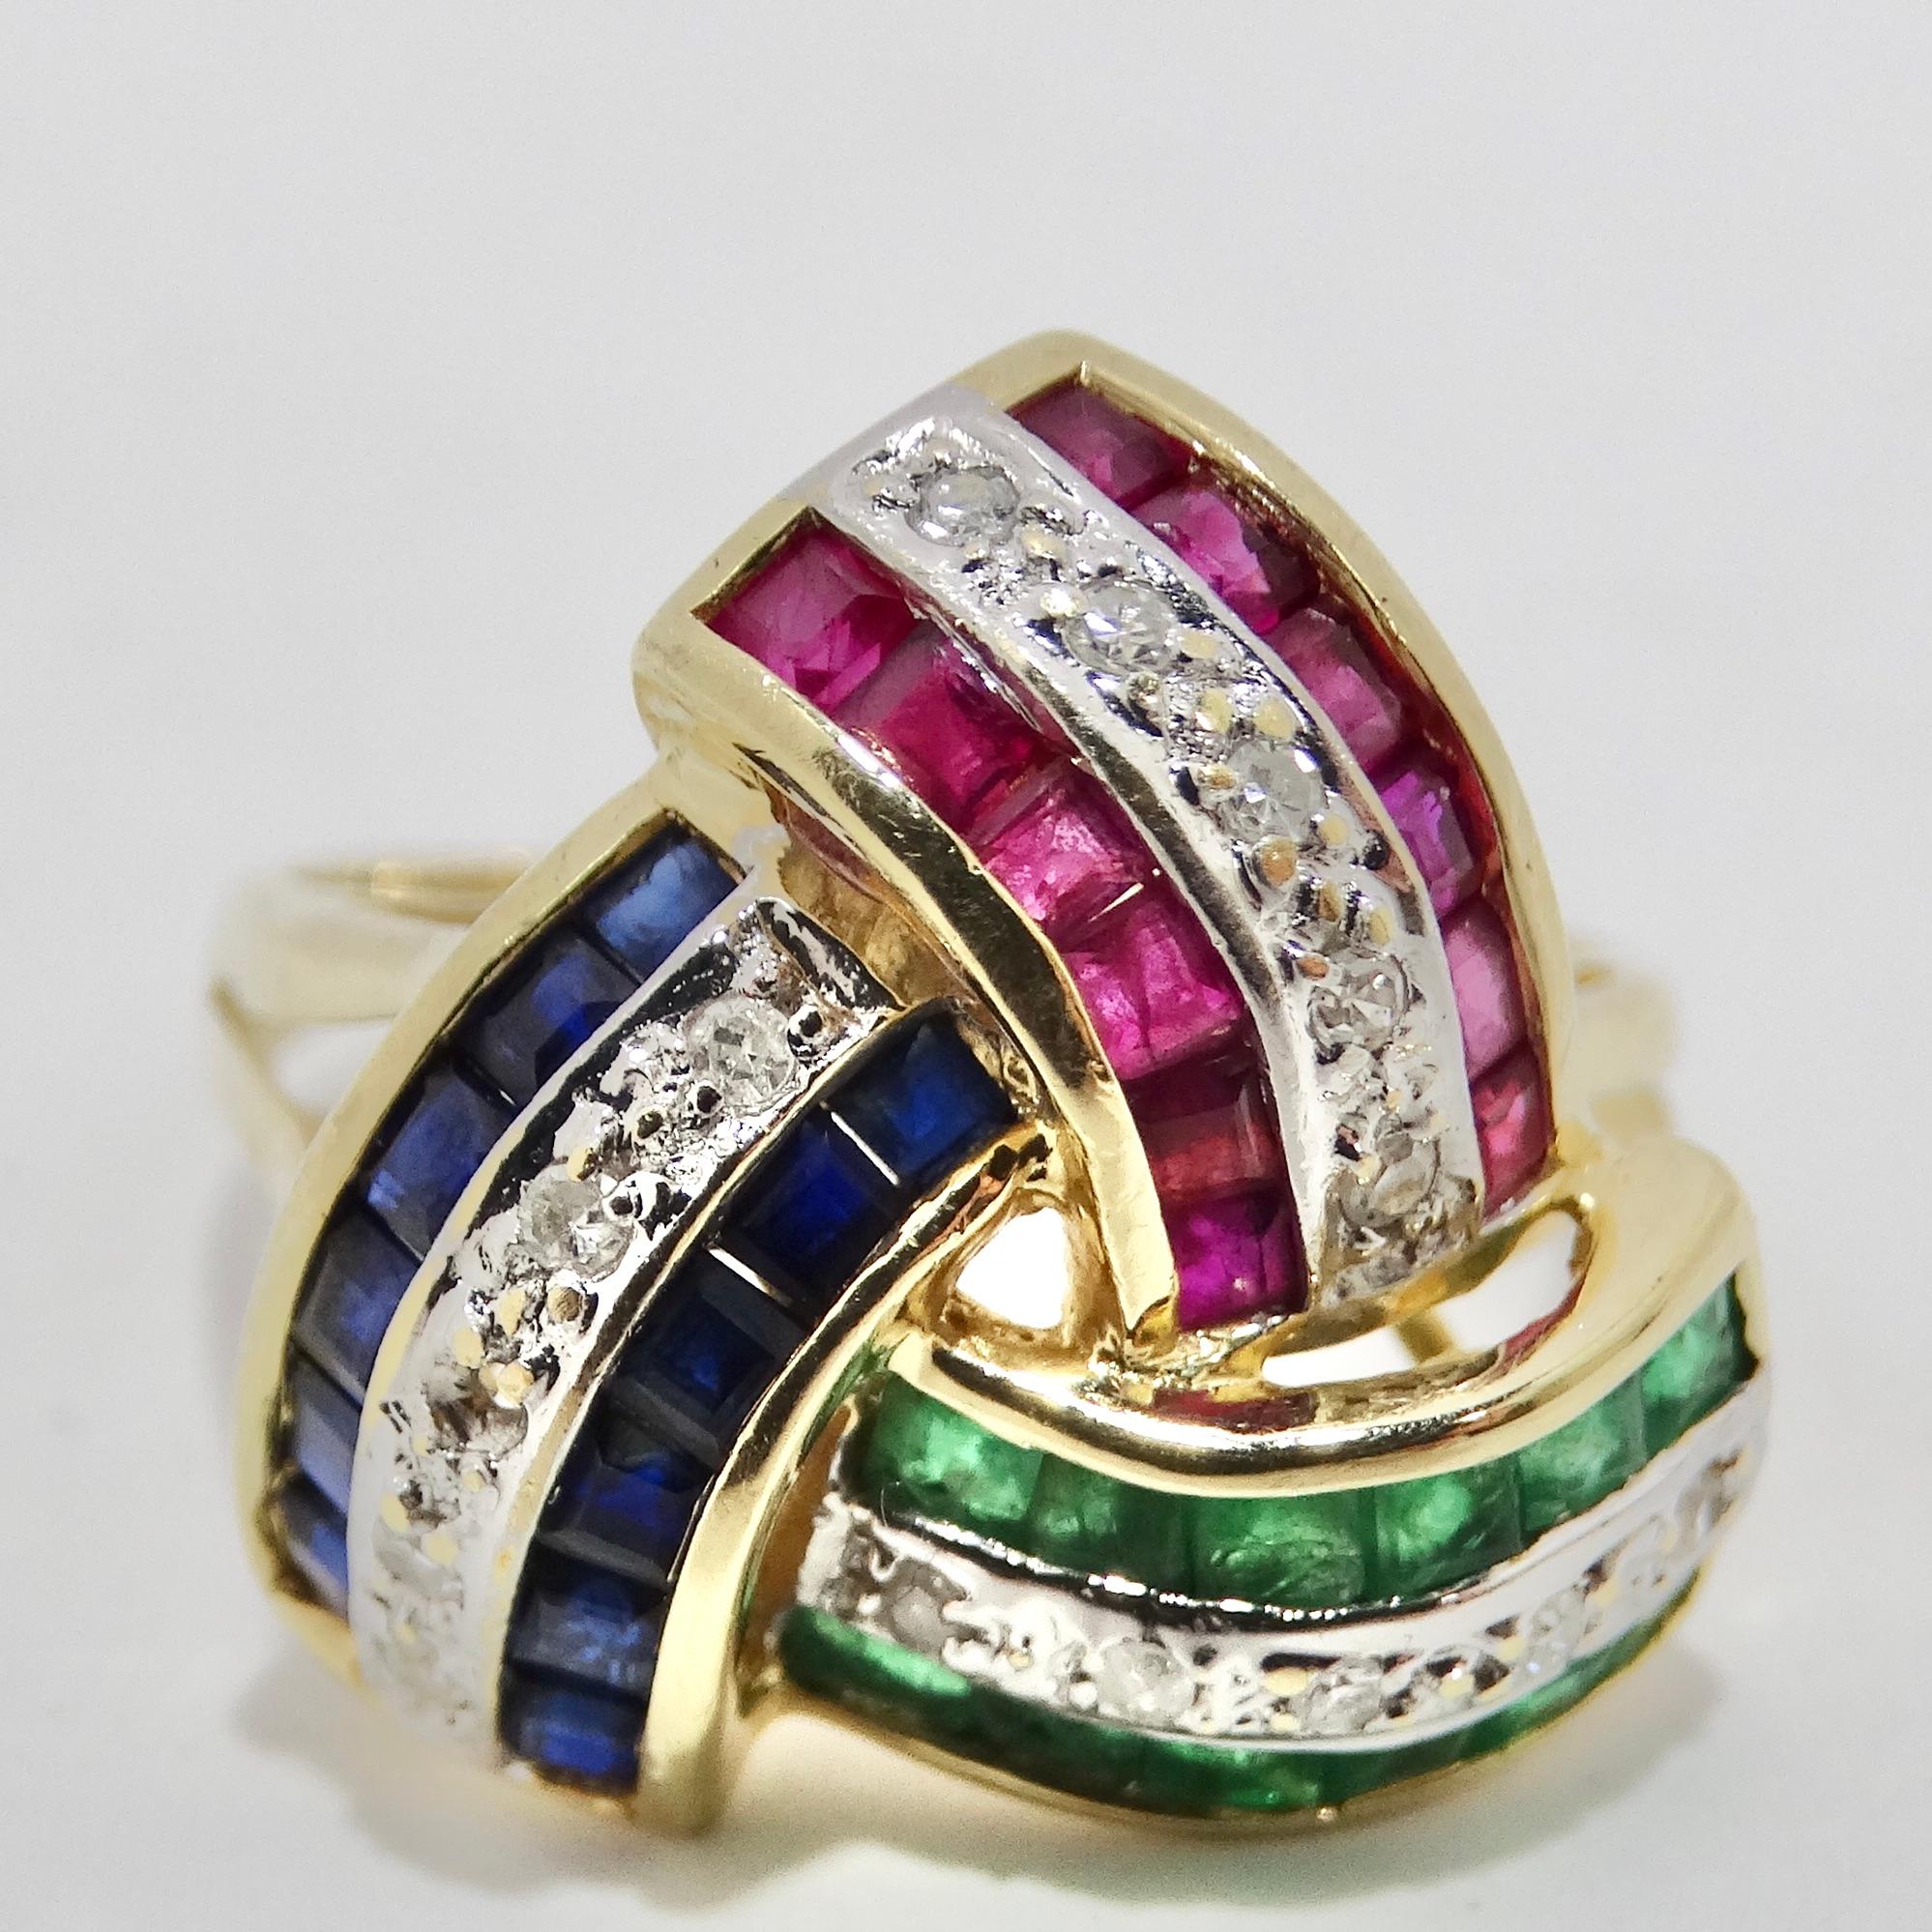 Voici la bague Inspired Sapphire, Ruby, Emerald, and Diamond 1960s Ring de David Webb, une pièce magnifique qui respire le glamour intemporel et capture l'essence du luxe vintage. Cette magnifique bague présente une sélection de pierres précieuses